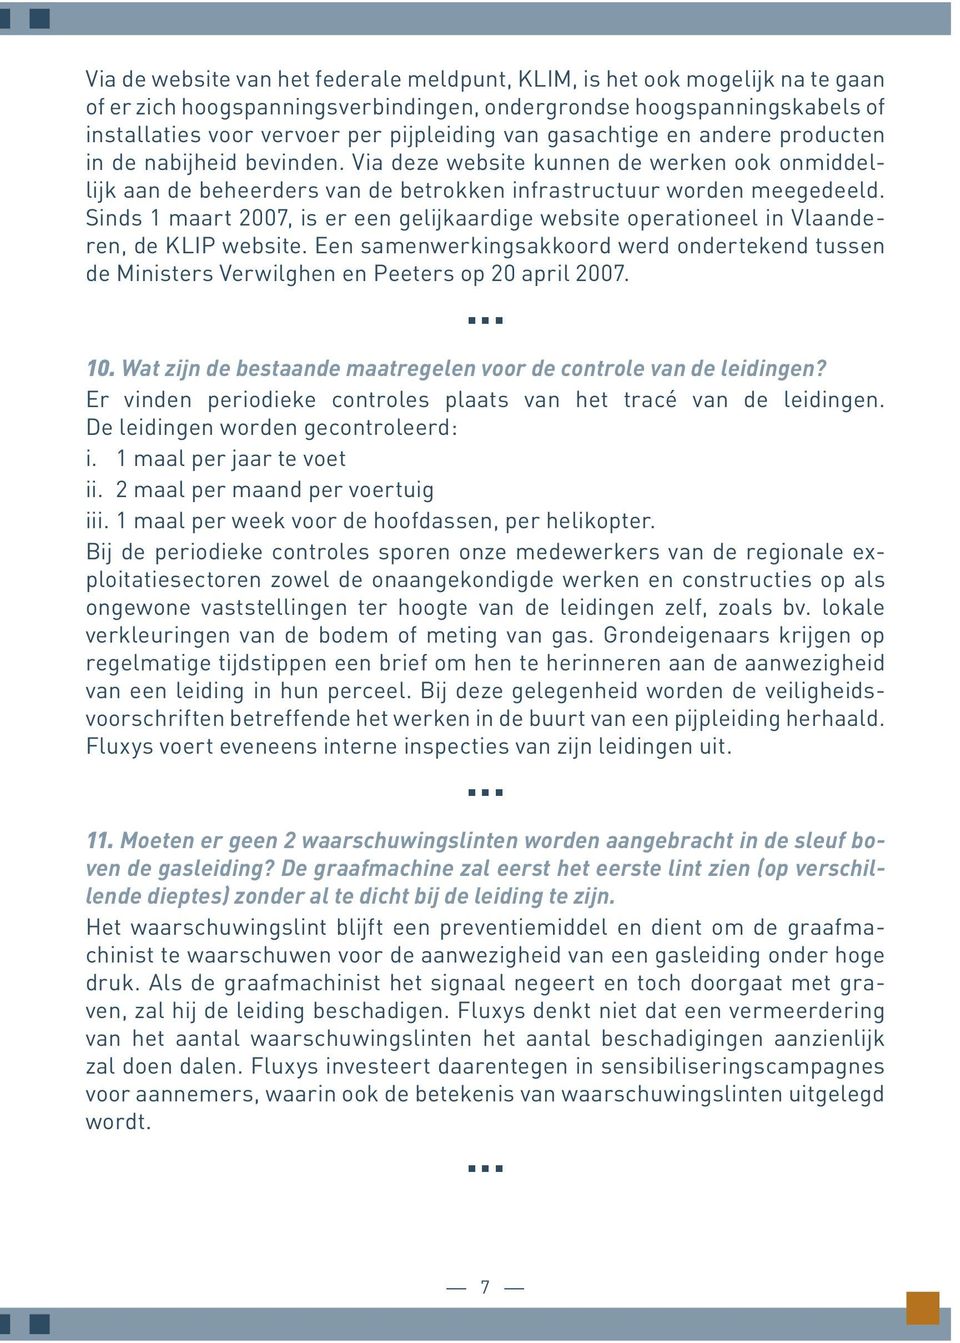 Sinds 1 maart 2007, is er een gelijkaardige website operationeel in Vlaanderen, de KLIP website. Een samenwerkingsakkoord werd ondertekend tussen de Ministers Verwilghen en Peeters op 20 april 2007.